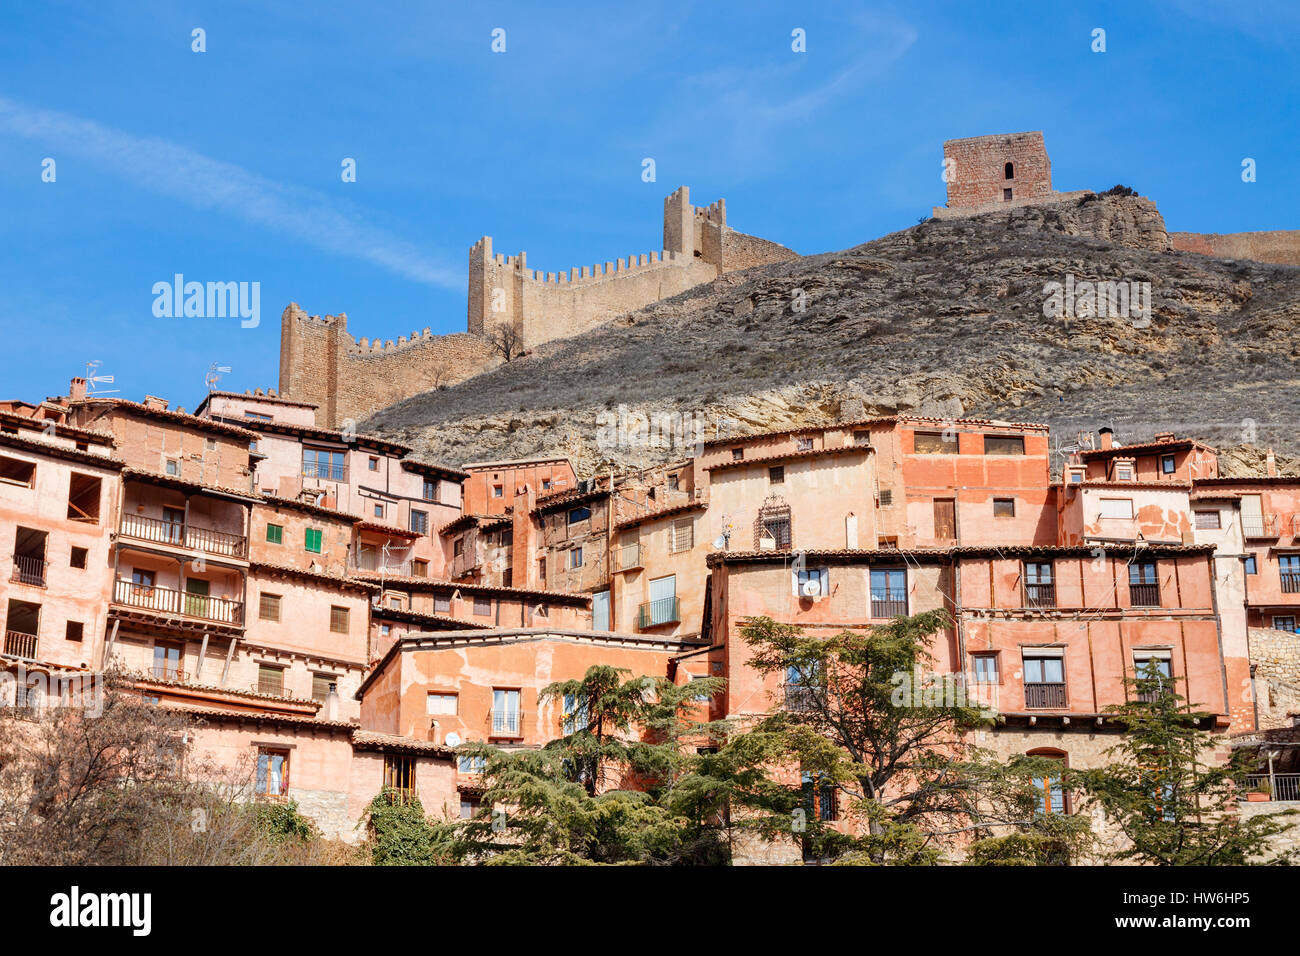 Häuser und Straßen von Albarracin gegen den Hang des Hügels mit der Stadtmauer auf der Oberseite an einem sonnigen Tag unter einem blauen Himmel. Albarracin, Teruel, Spanien. Stockfoto